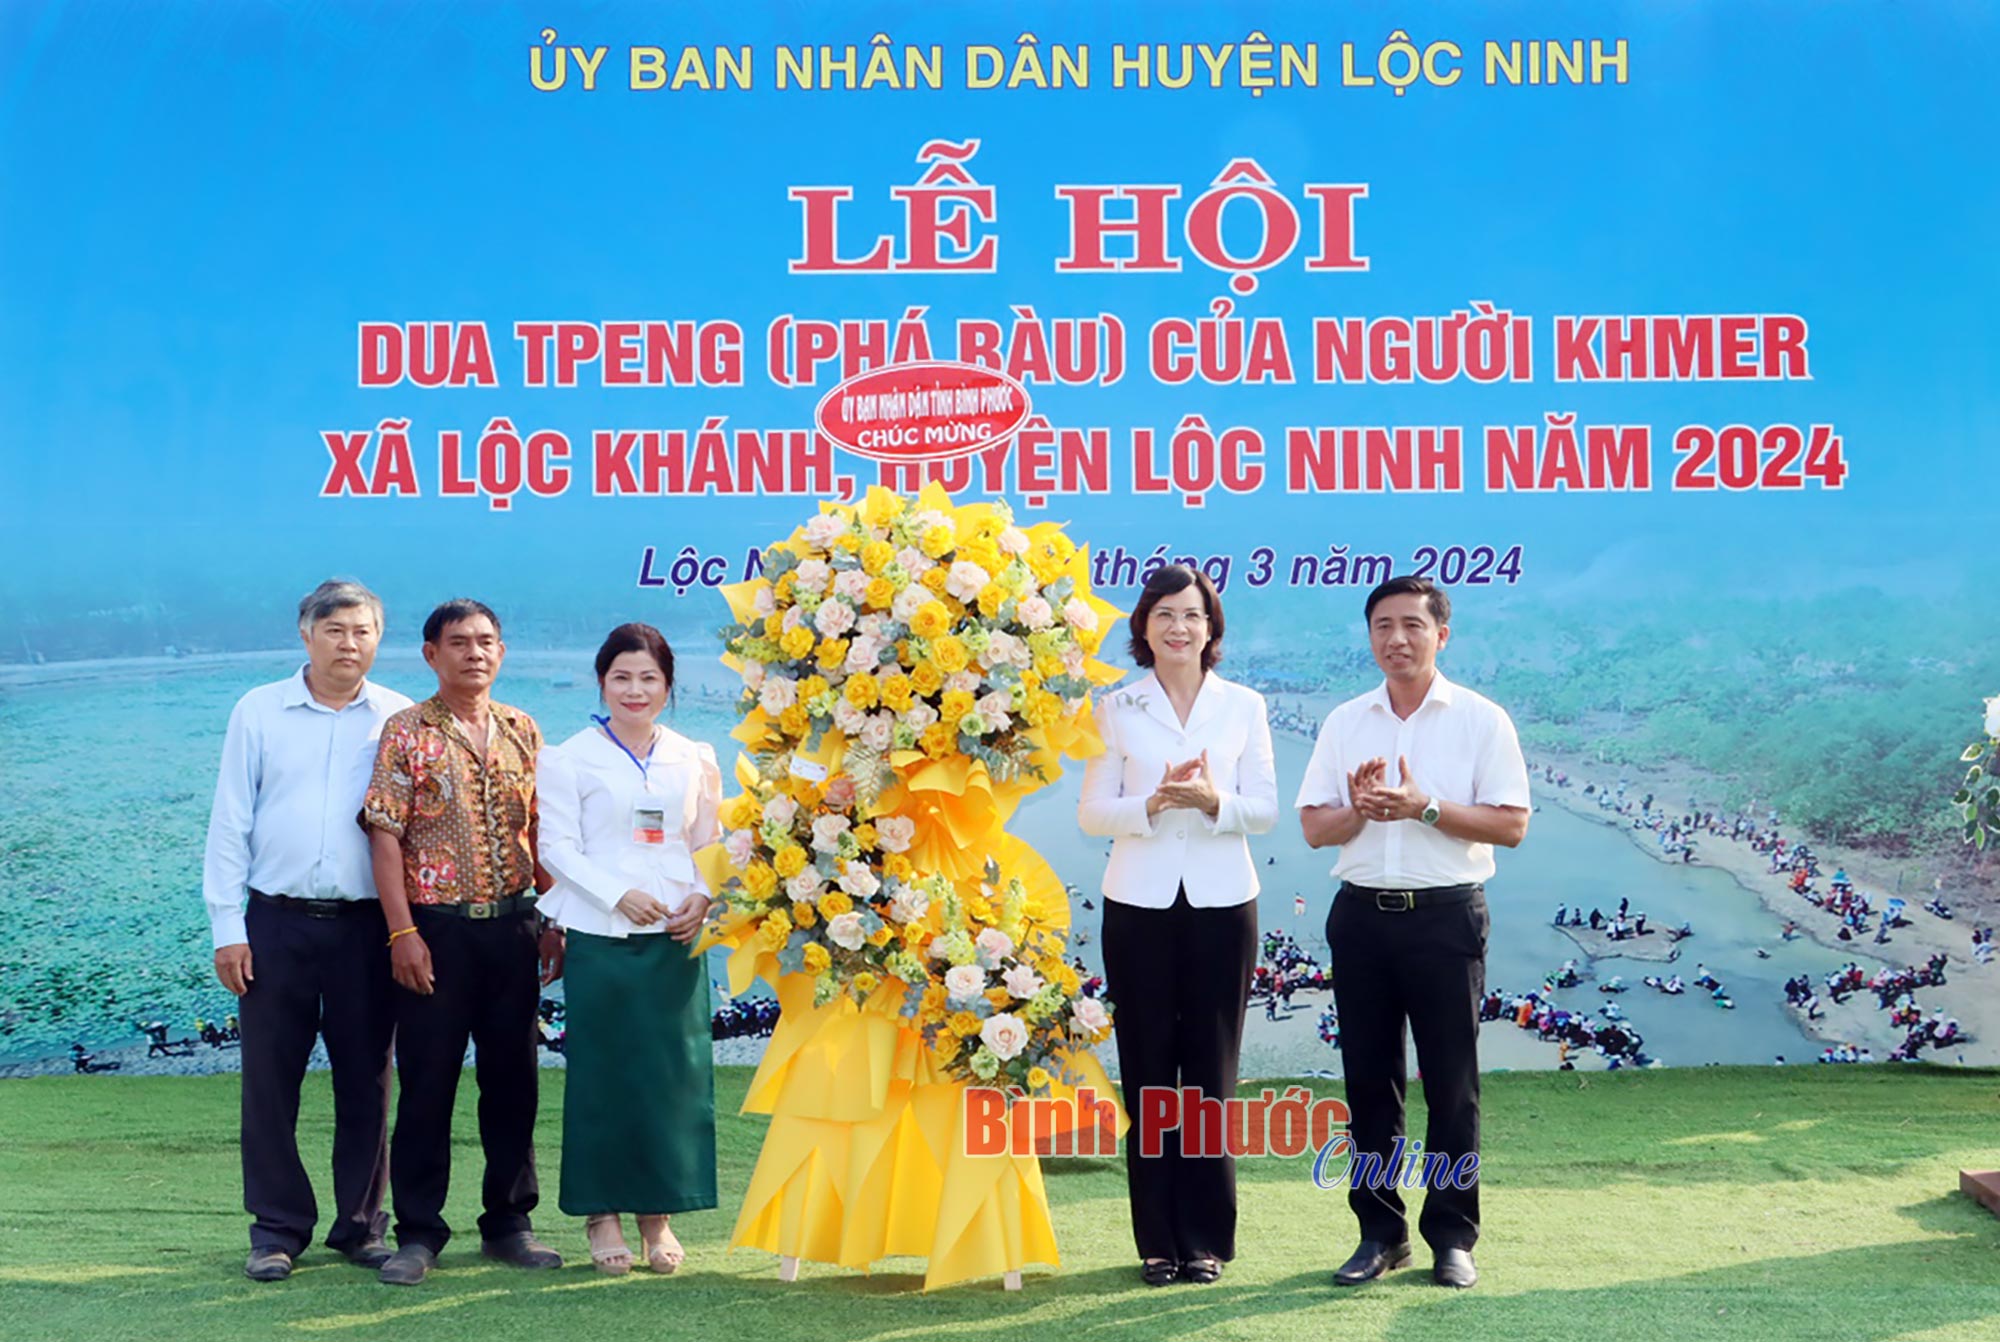 Lễ hội Phá Bàu tỉnh Bình Phước - Nét văn hóa độc đáo phong phú, đa dạng của đồng bào Khmer